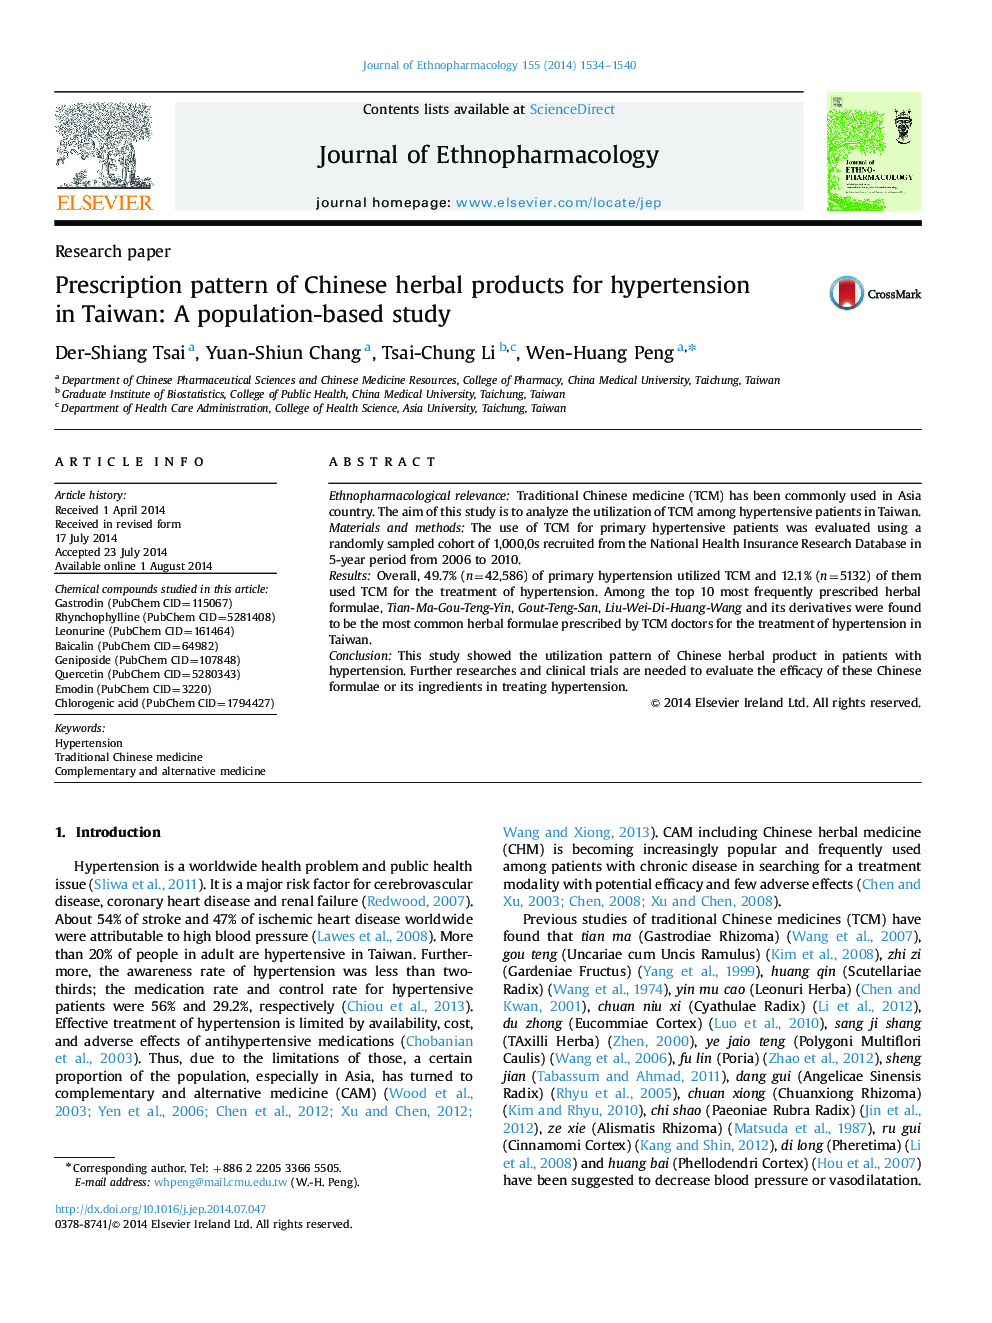 الگوی تجویزی محصولات گیاهی چینی برای فشار خون بالا در تایوان: مطالعه مبتنی بر جمعیت 